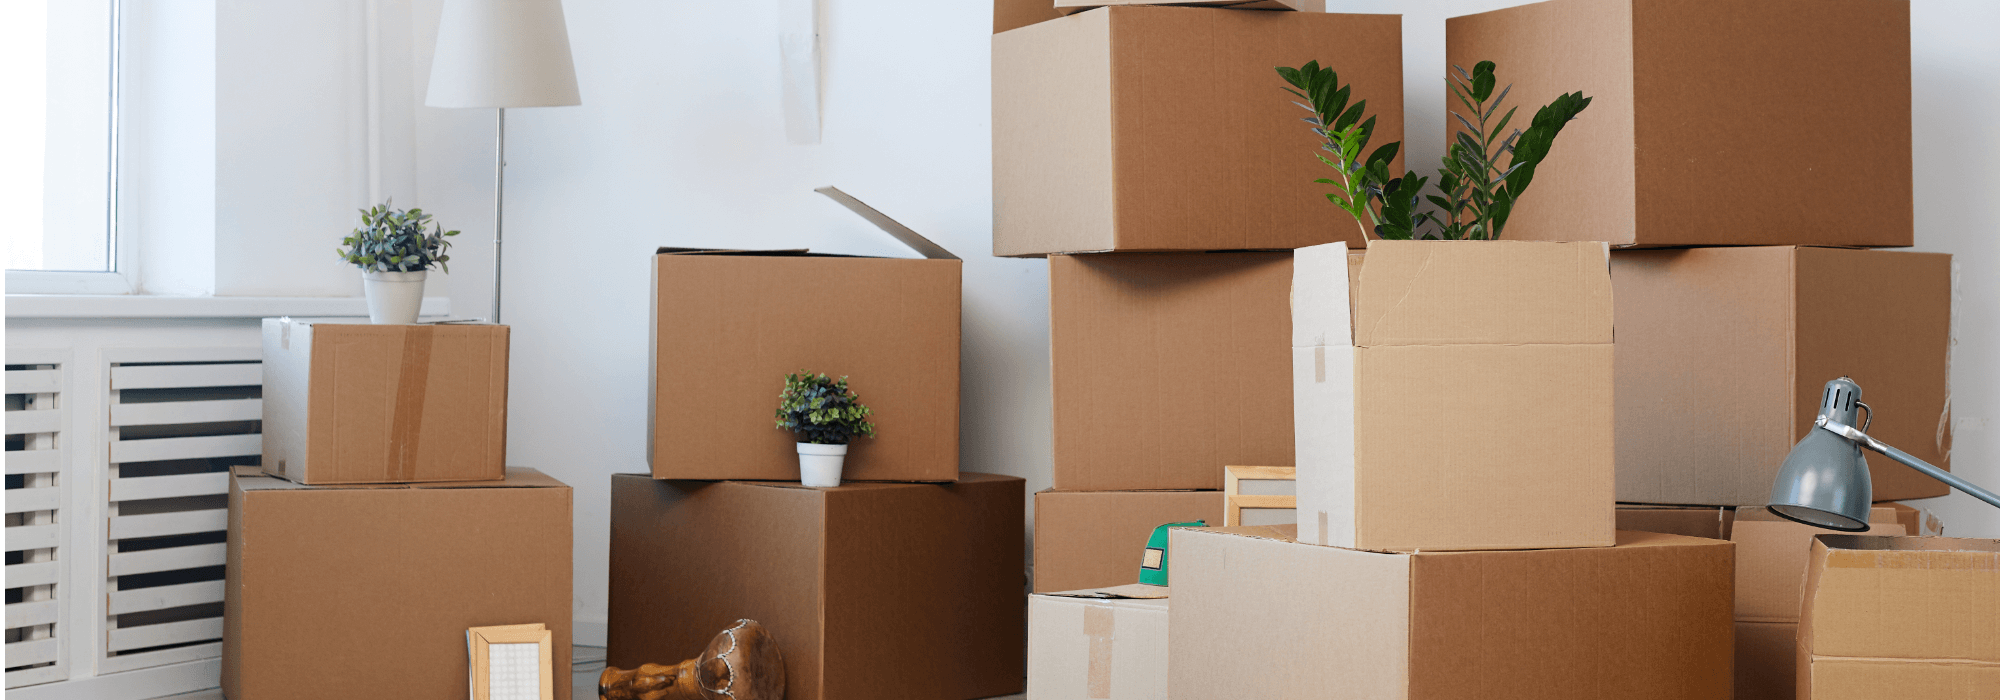 Organiser déménagement